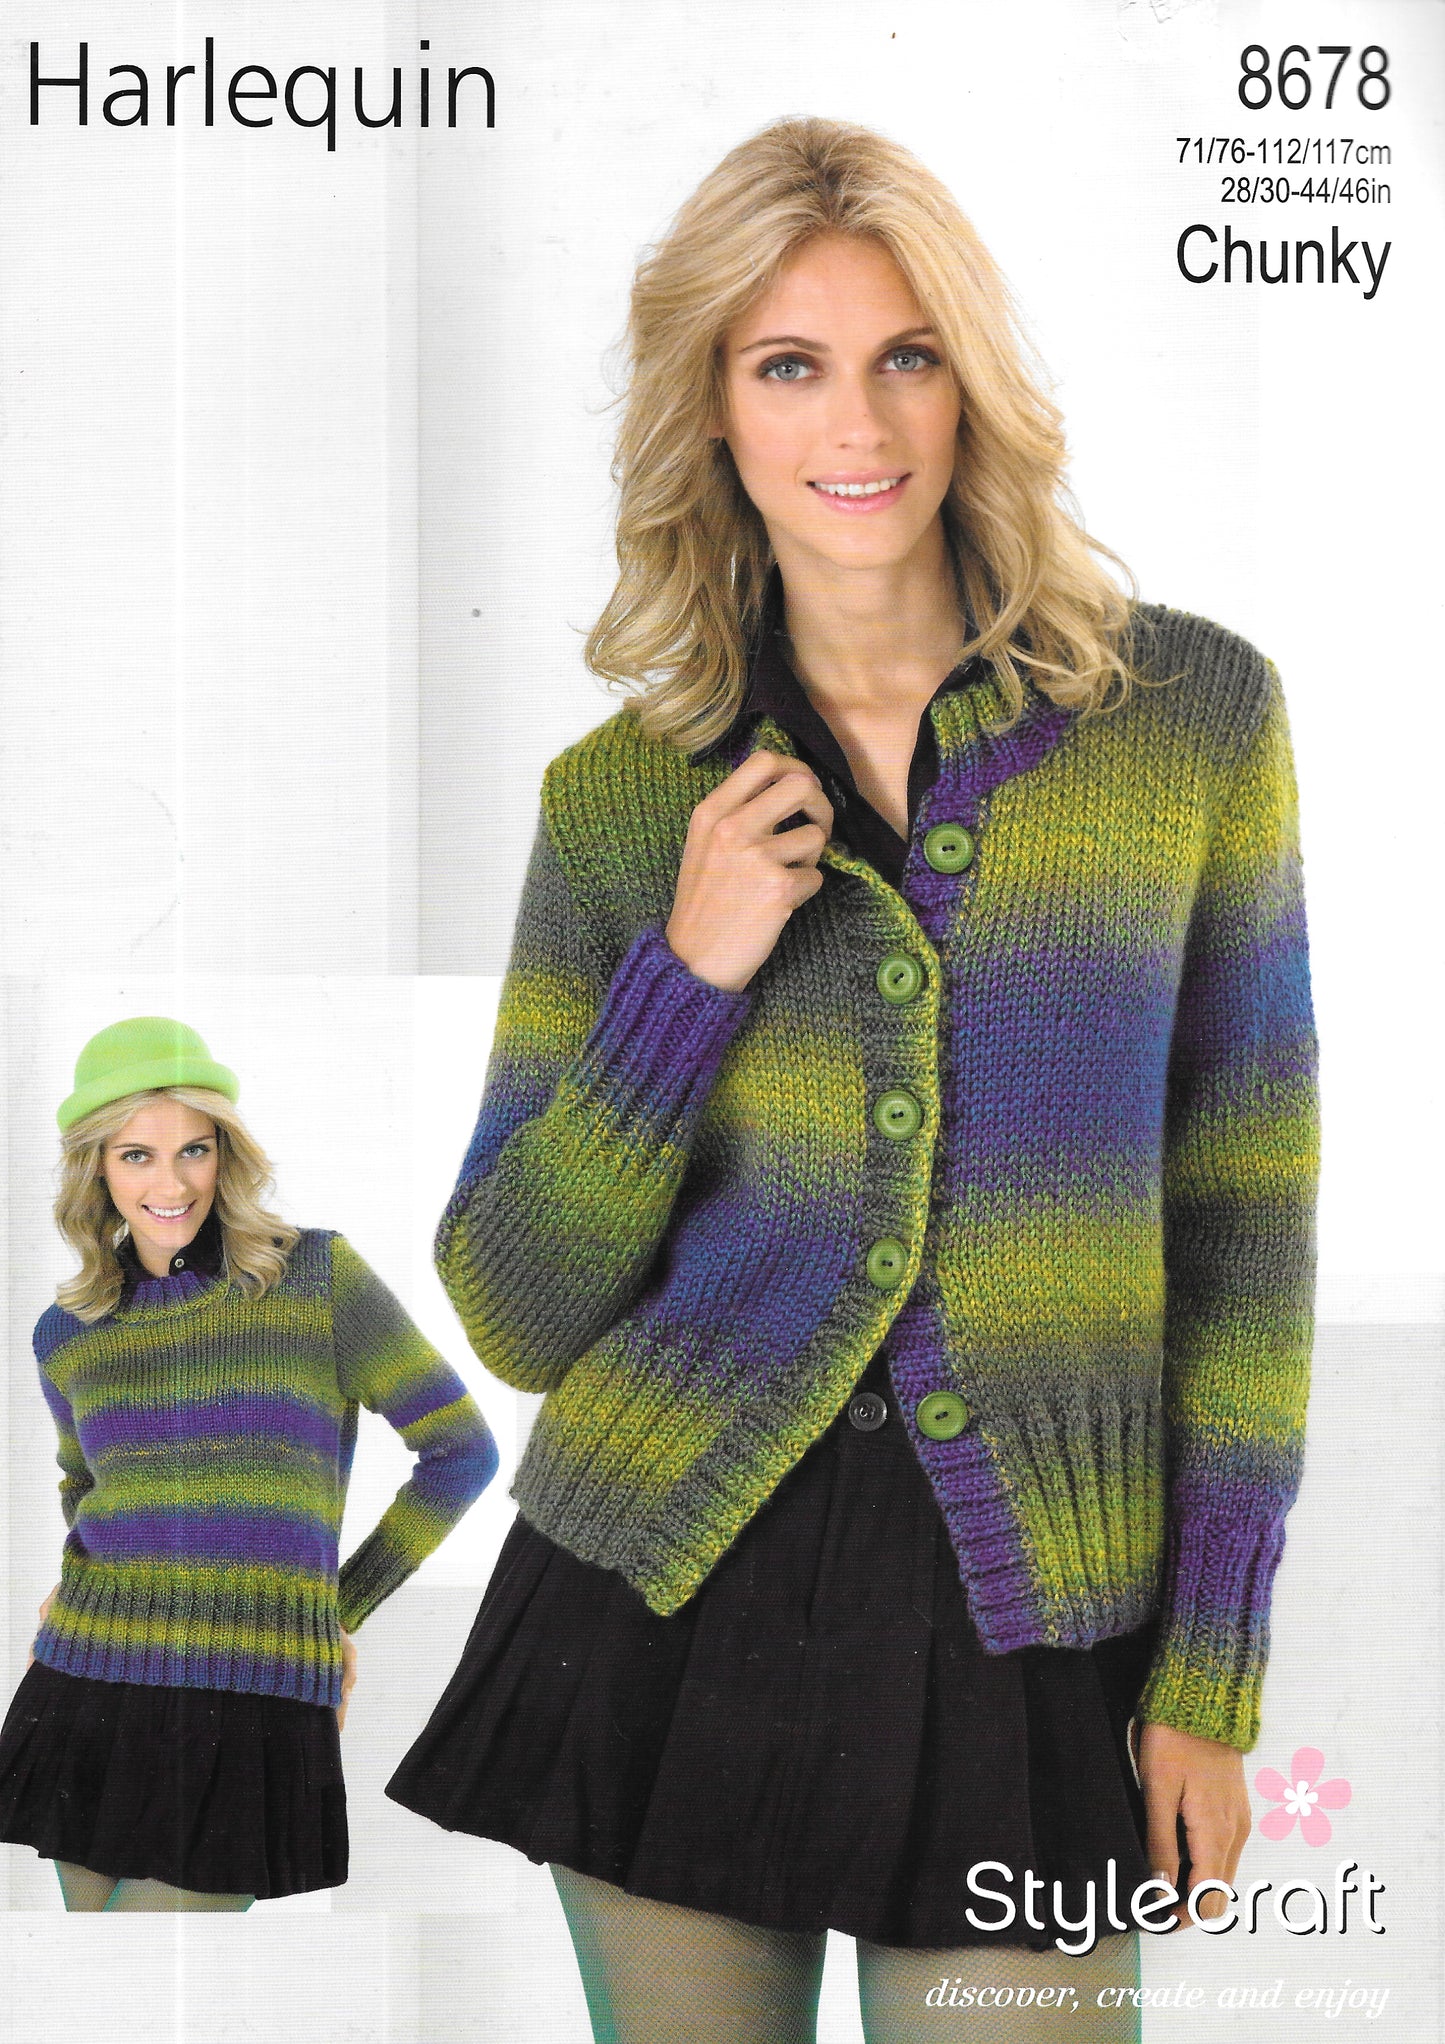 8678 Stylecraft knitting pattern. Lady's Sweater/Cardigan. Chunky